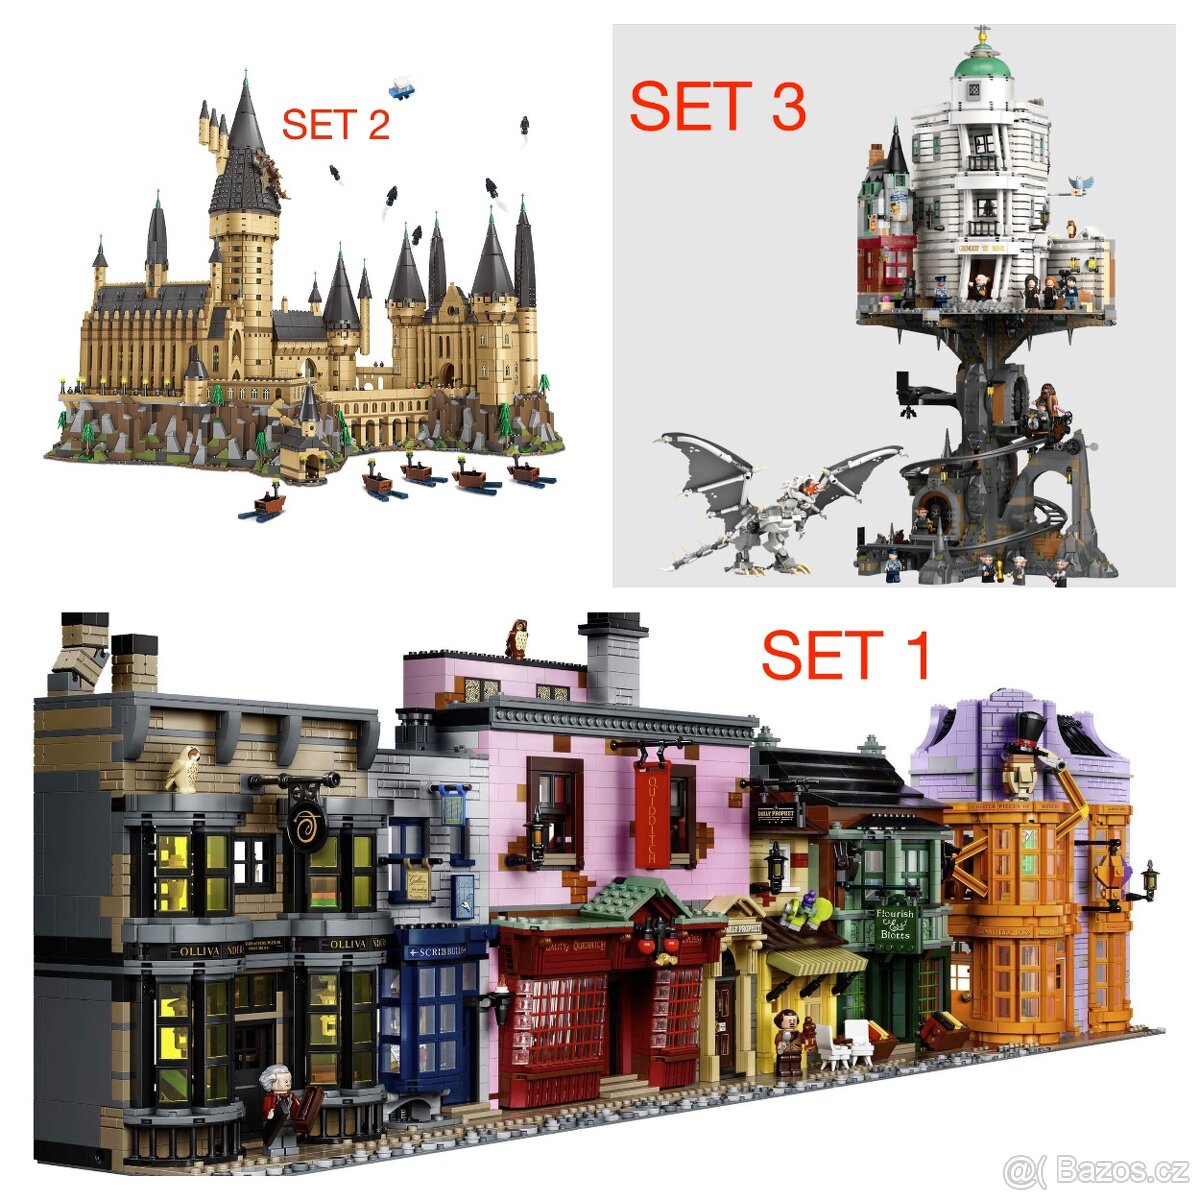 Harry Potter stavebnice 6 + figúrky - typ lego - nové